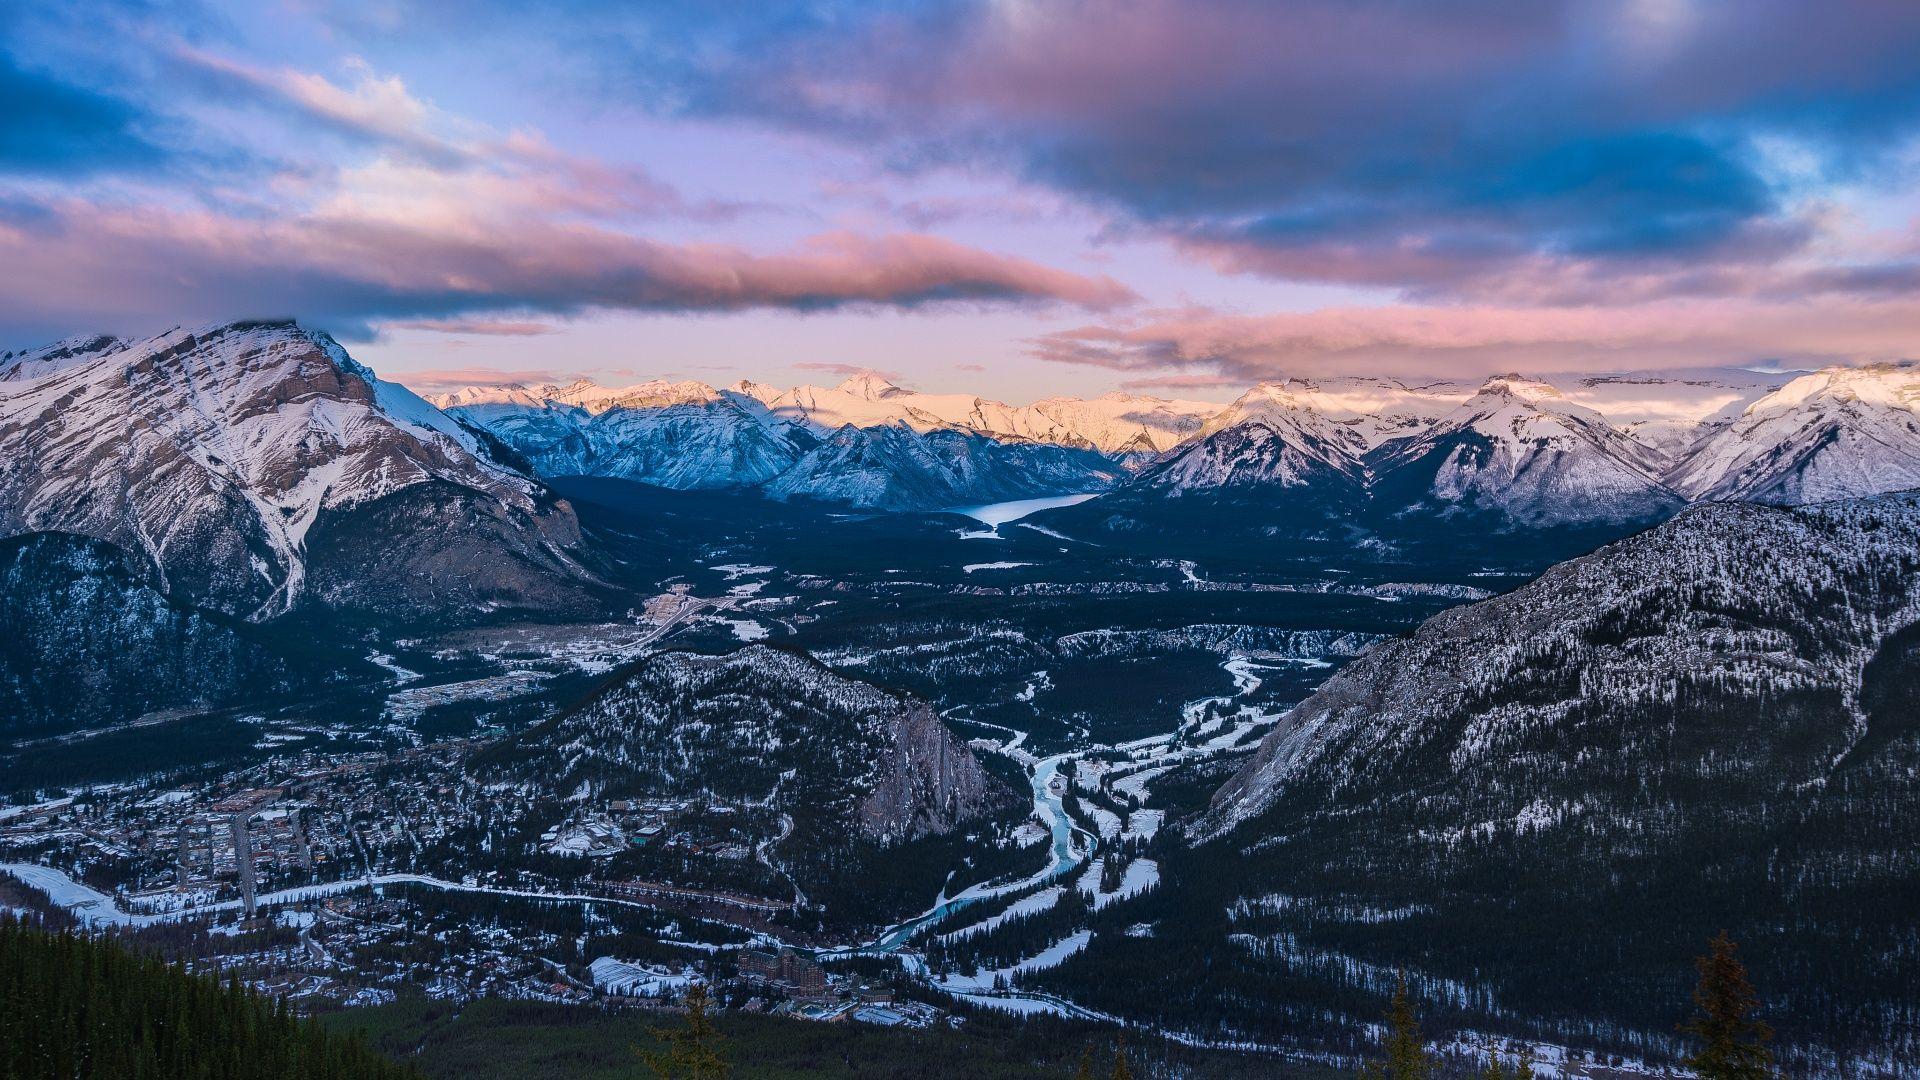 Sunset Sulphur Mountain Banff National Park Wallpaper in jpg